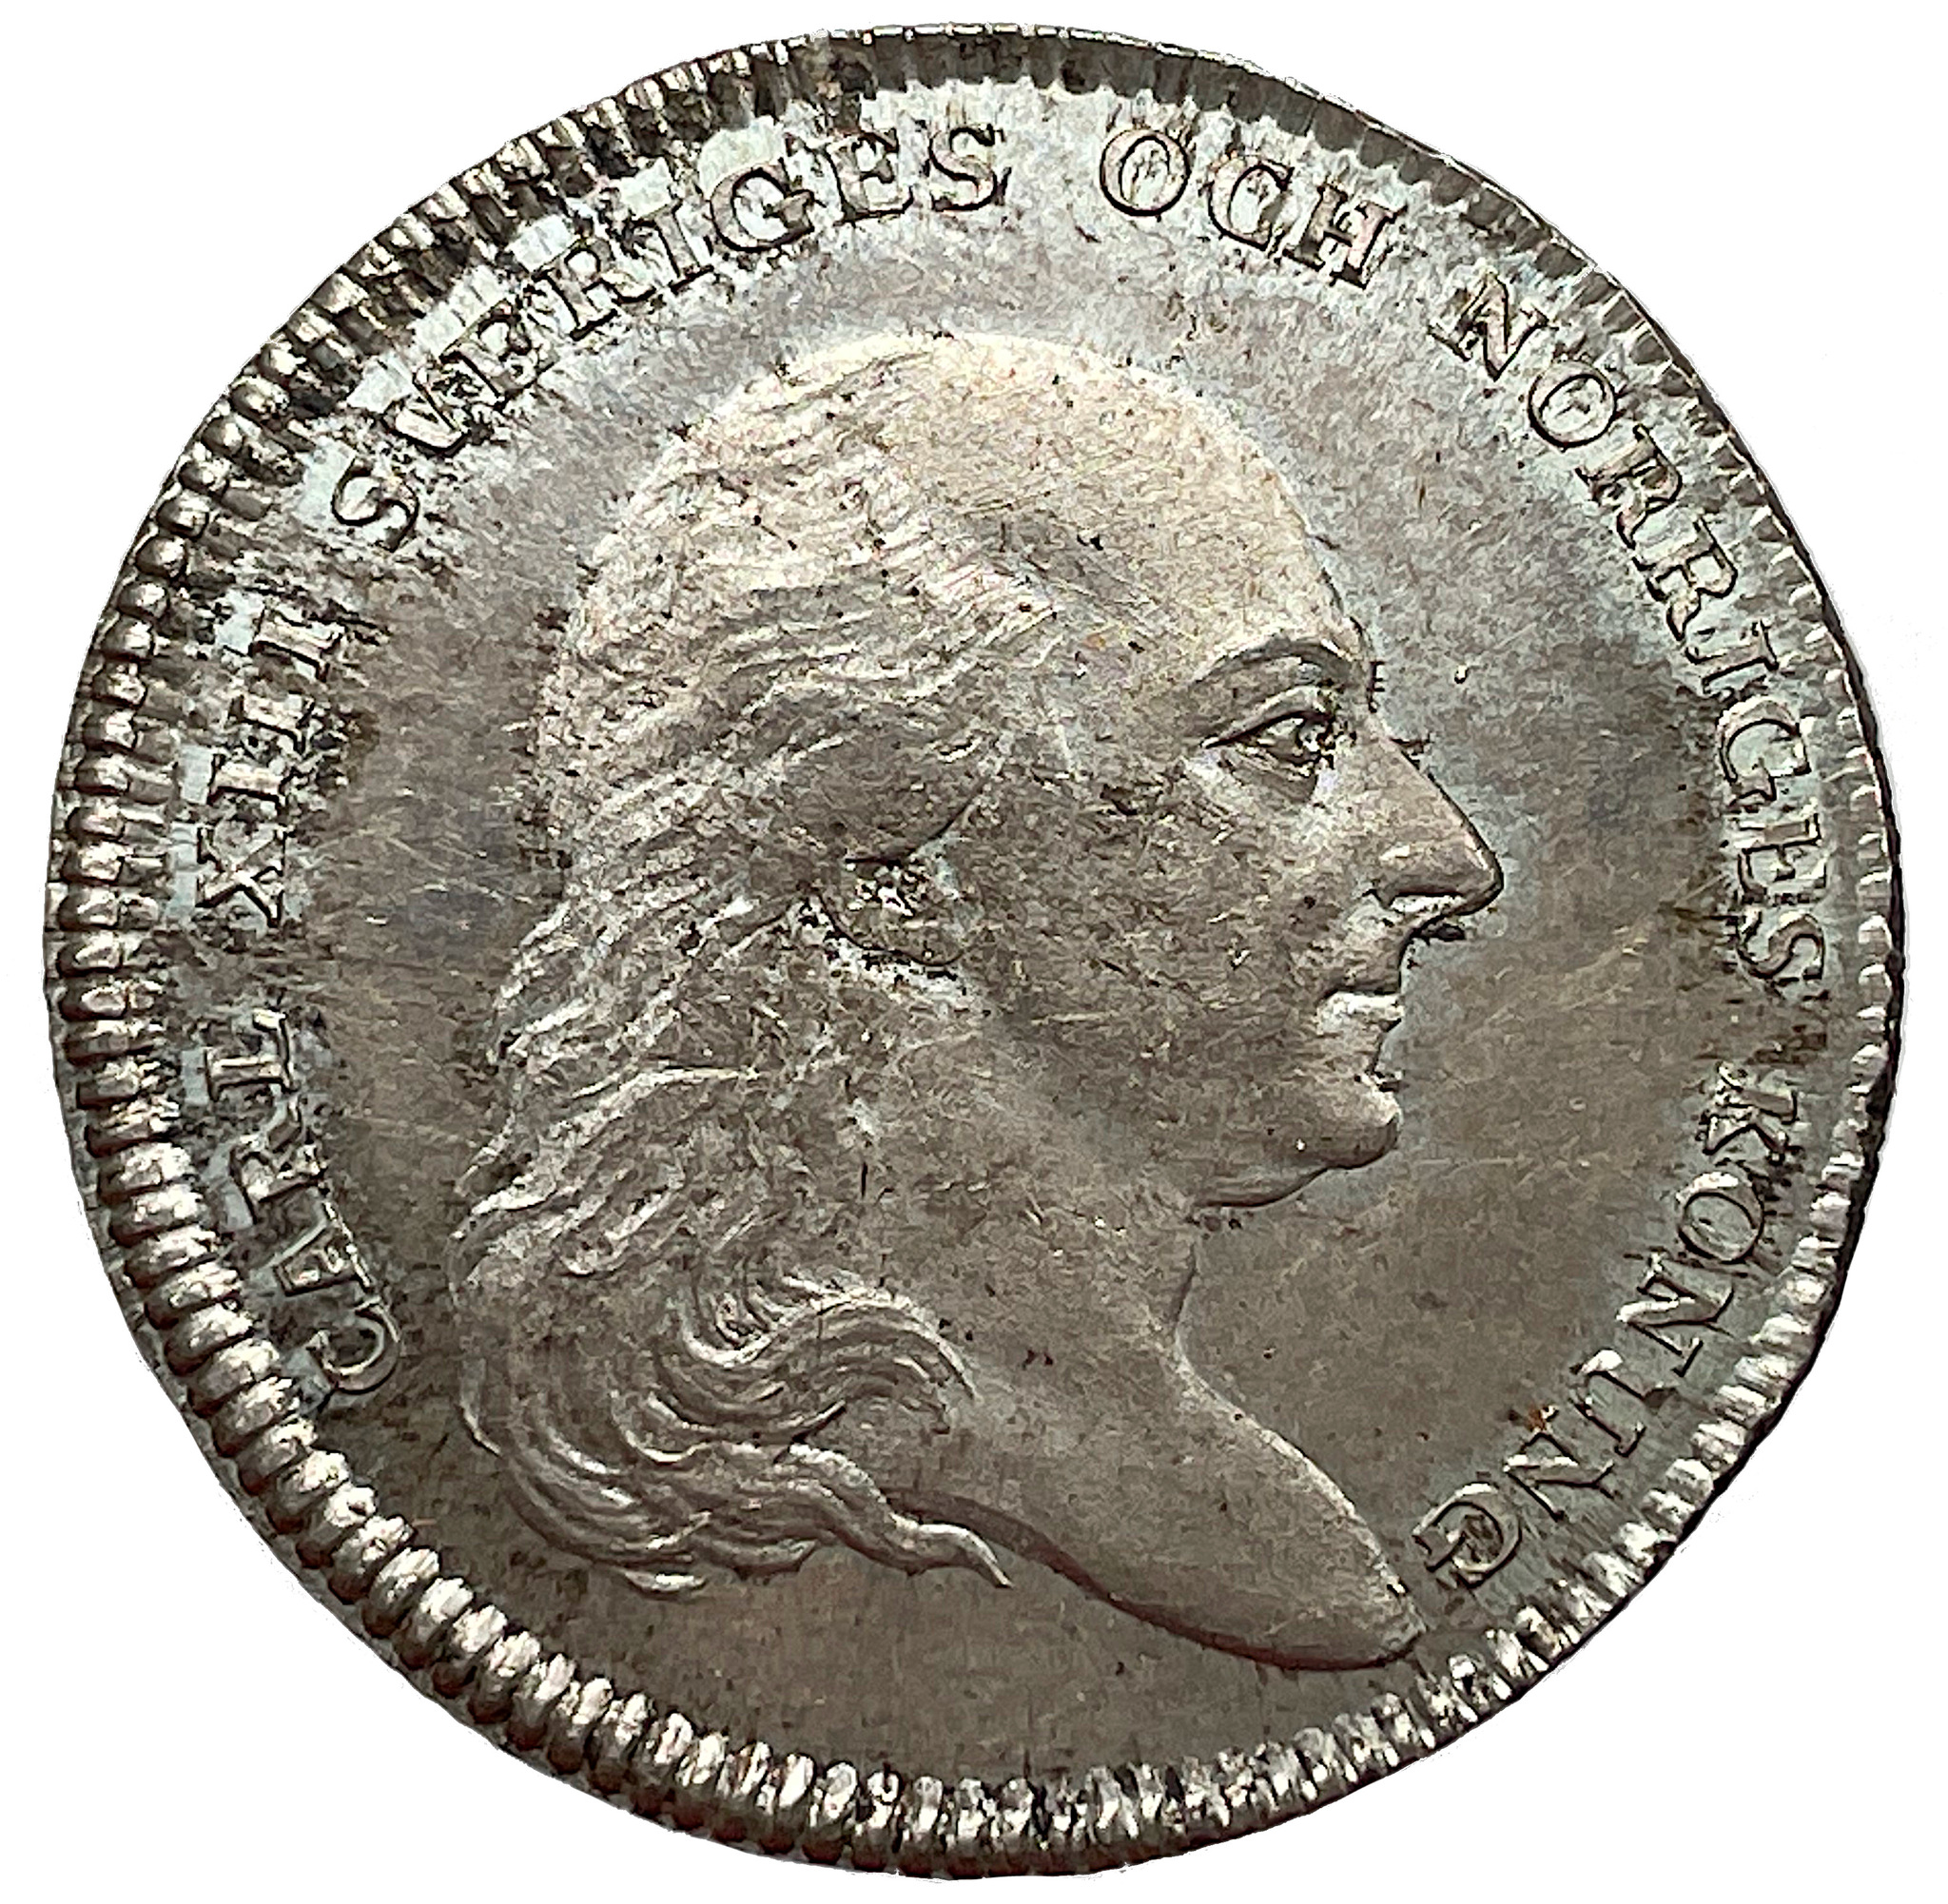 Karl XIII - Kastmynt 1/3 Riksdaler till begravning 1818 -  i underbar kvalitet, full lyster och härligt skarpa kanter